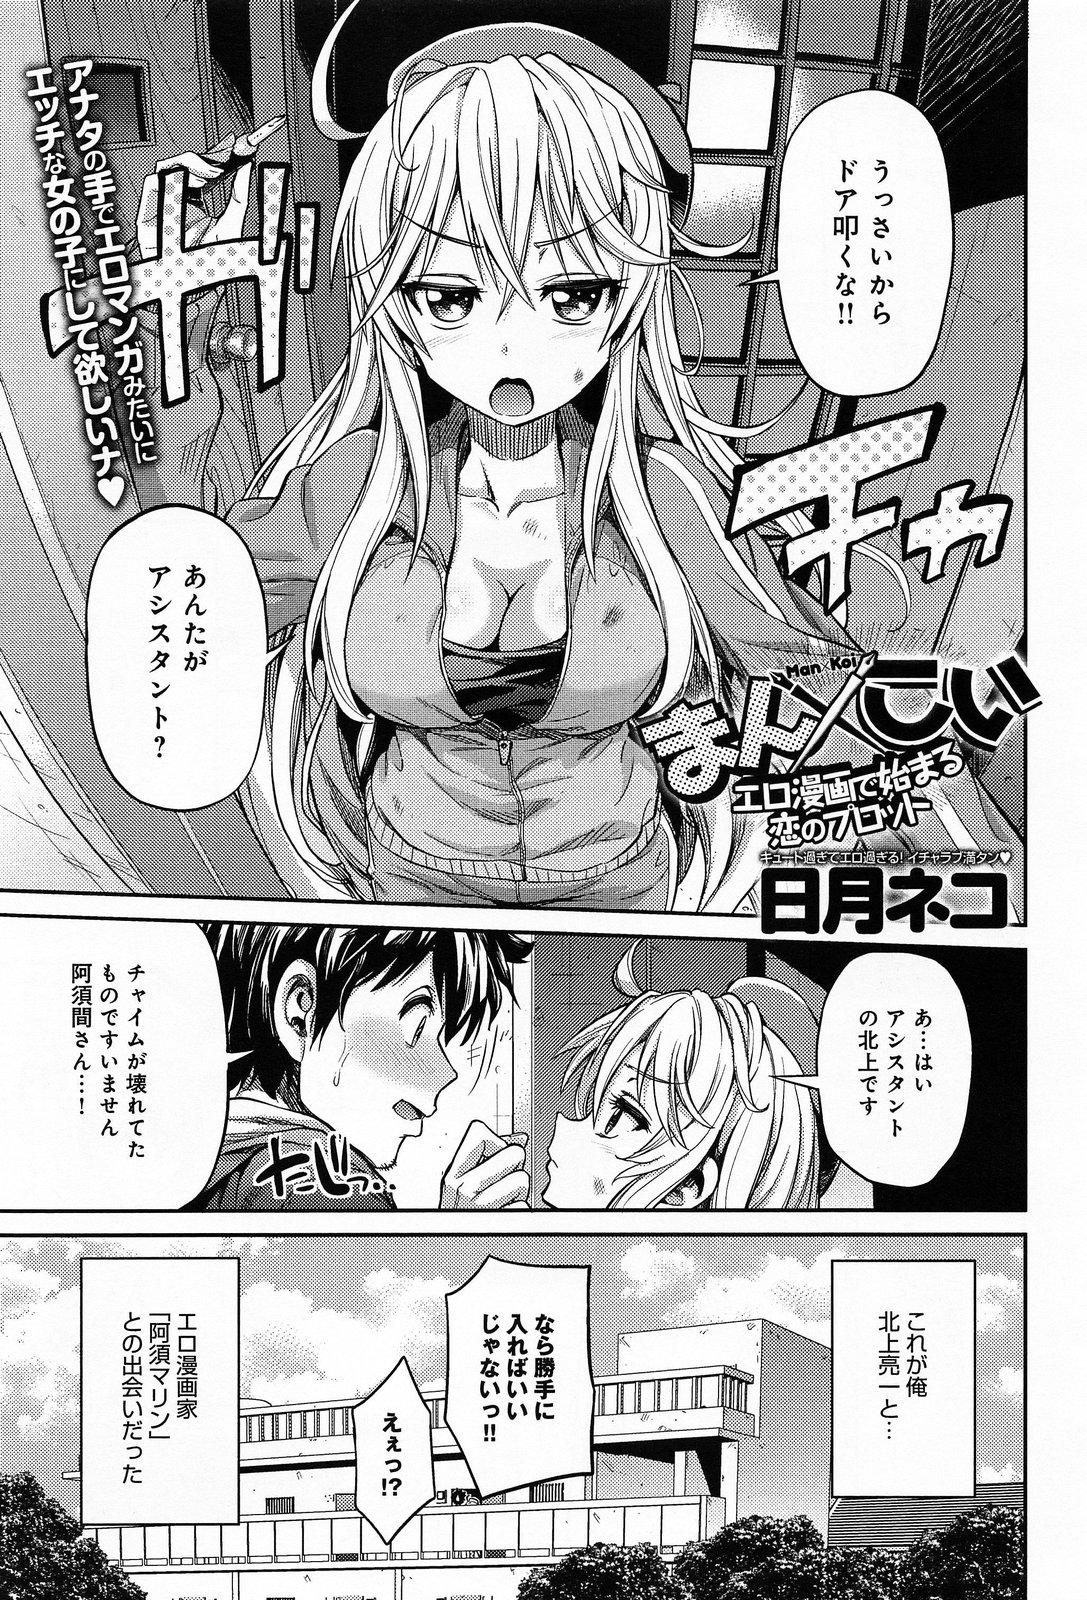 Nipple Man × Koi Ero Manga de Hajimaru Koi no Plot Comendo - Picture 1